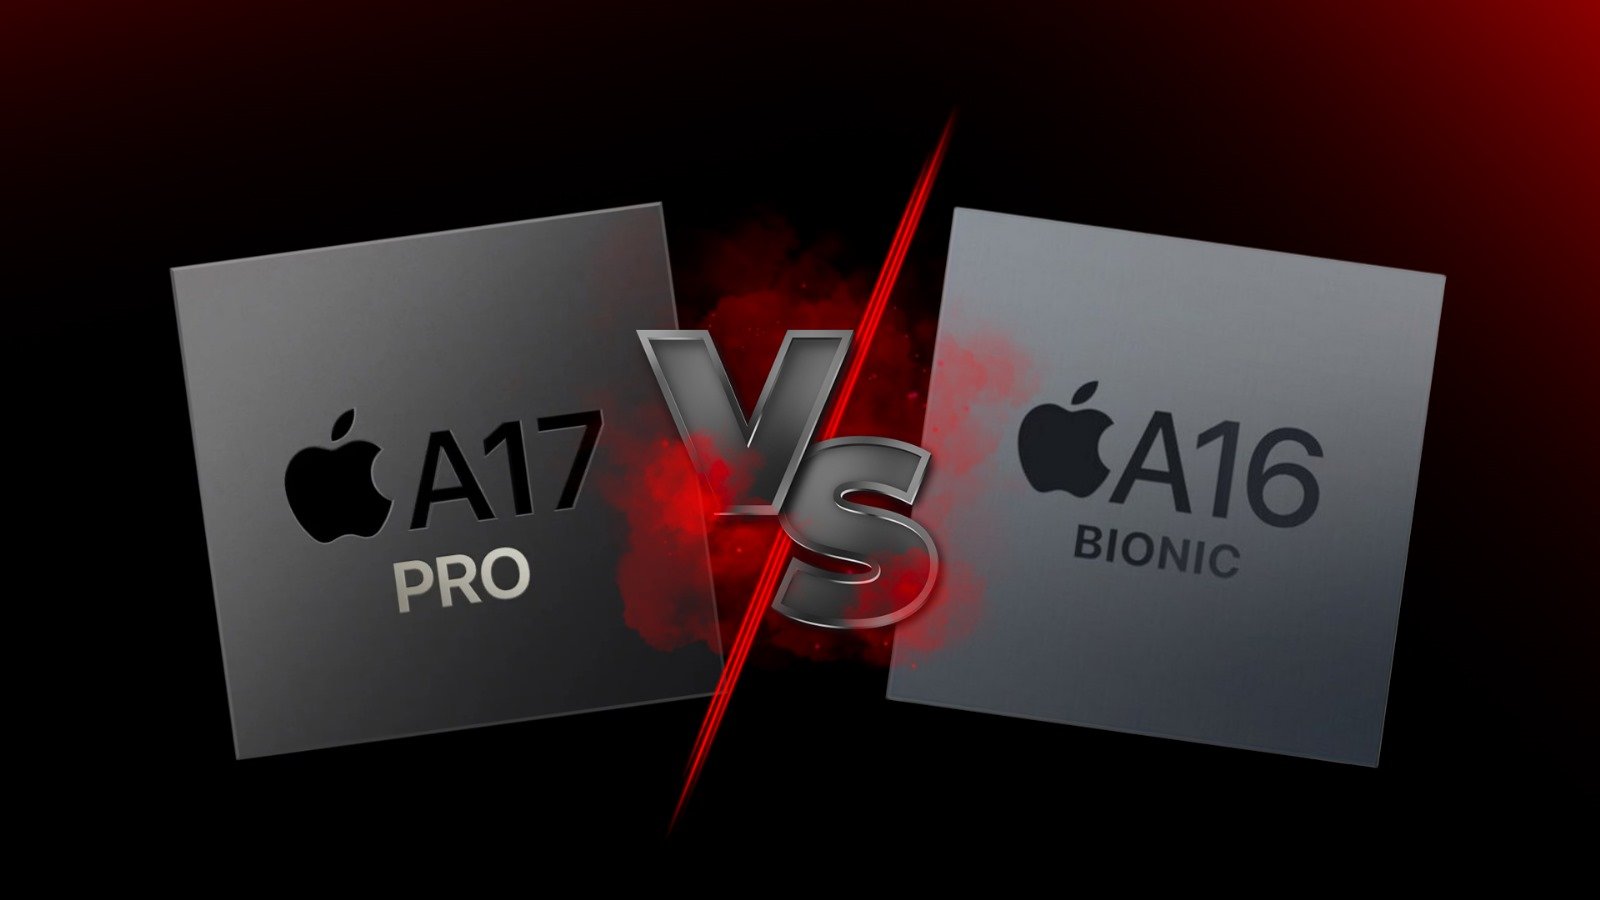 A17 Pro Chip vs A16 Bionic Chip